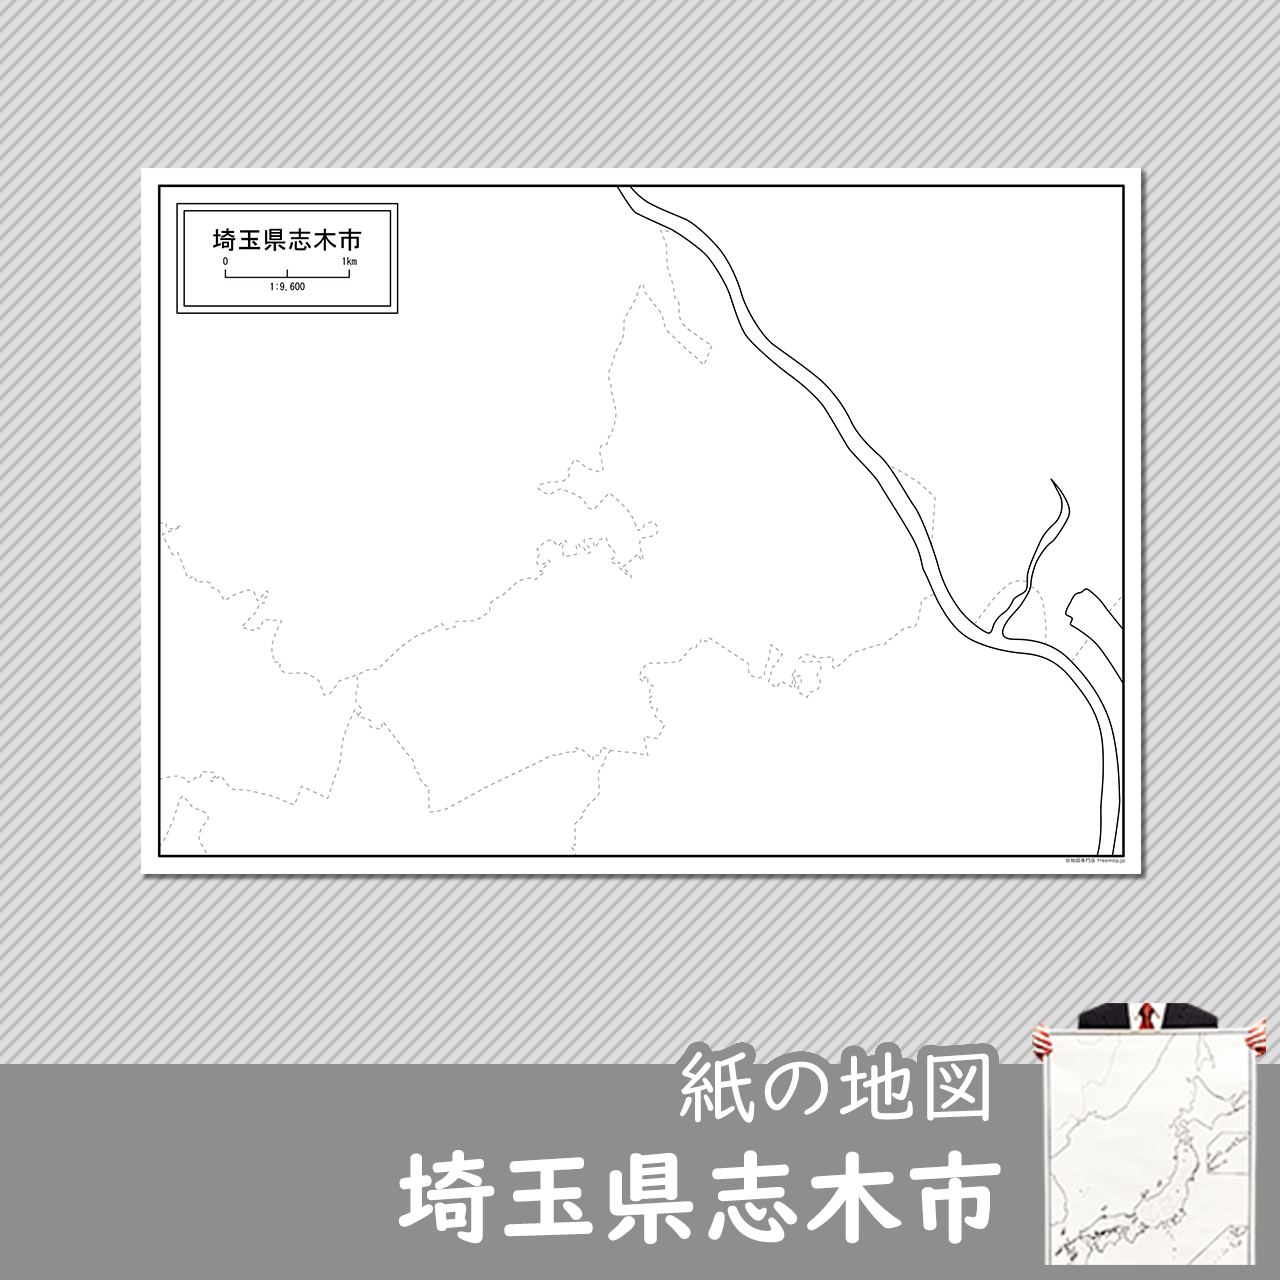 志木市の紙の白地図のサムネイル